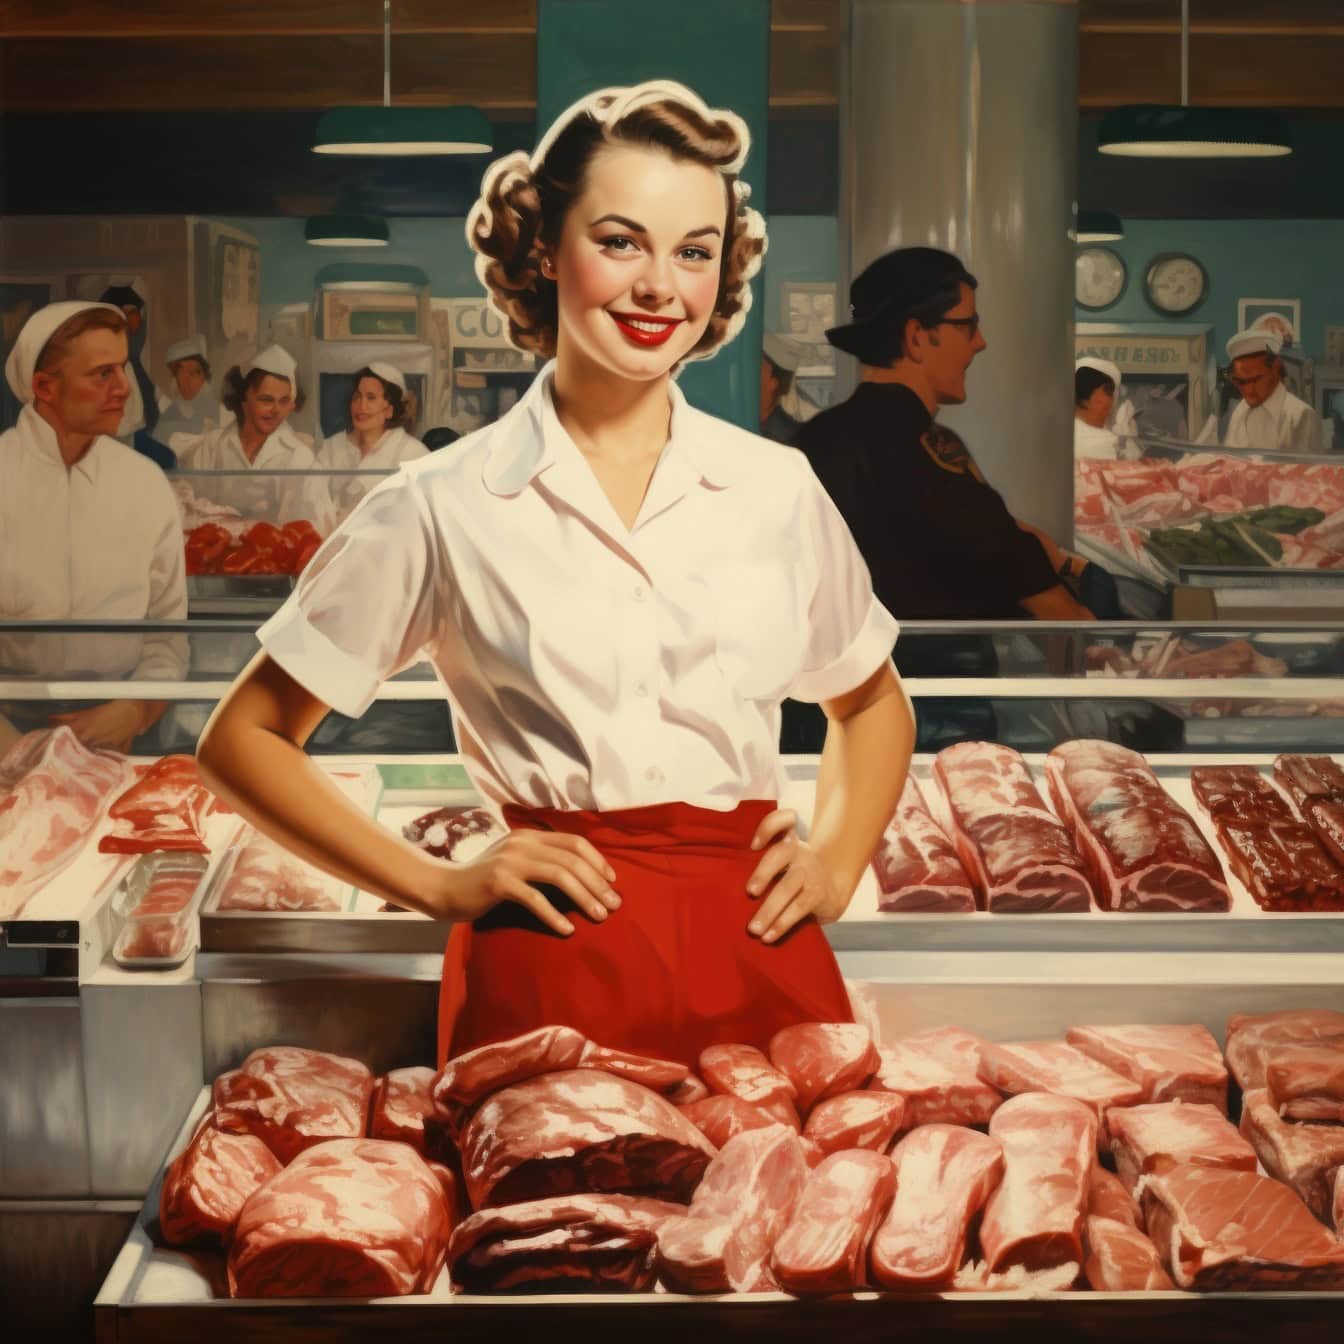 Řeznice stojící před masem v řeznictví nebo supermarketu, ilustrace ve stylu 60. let 20. století